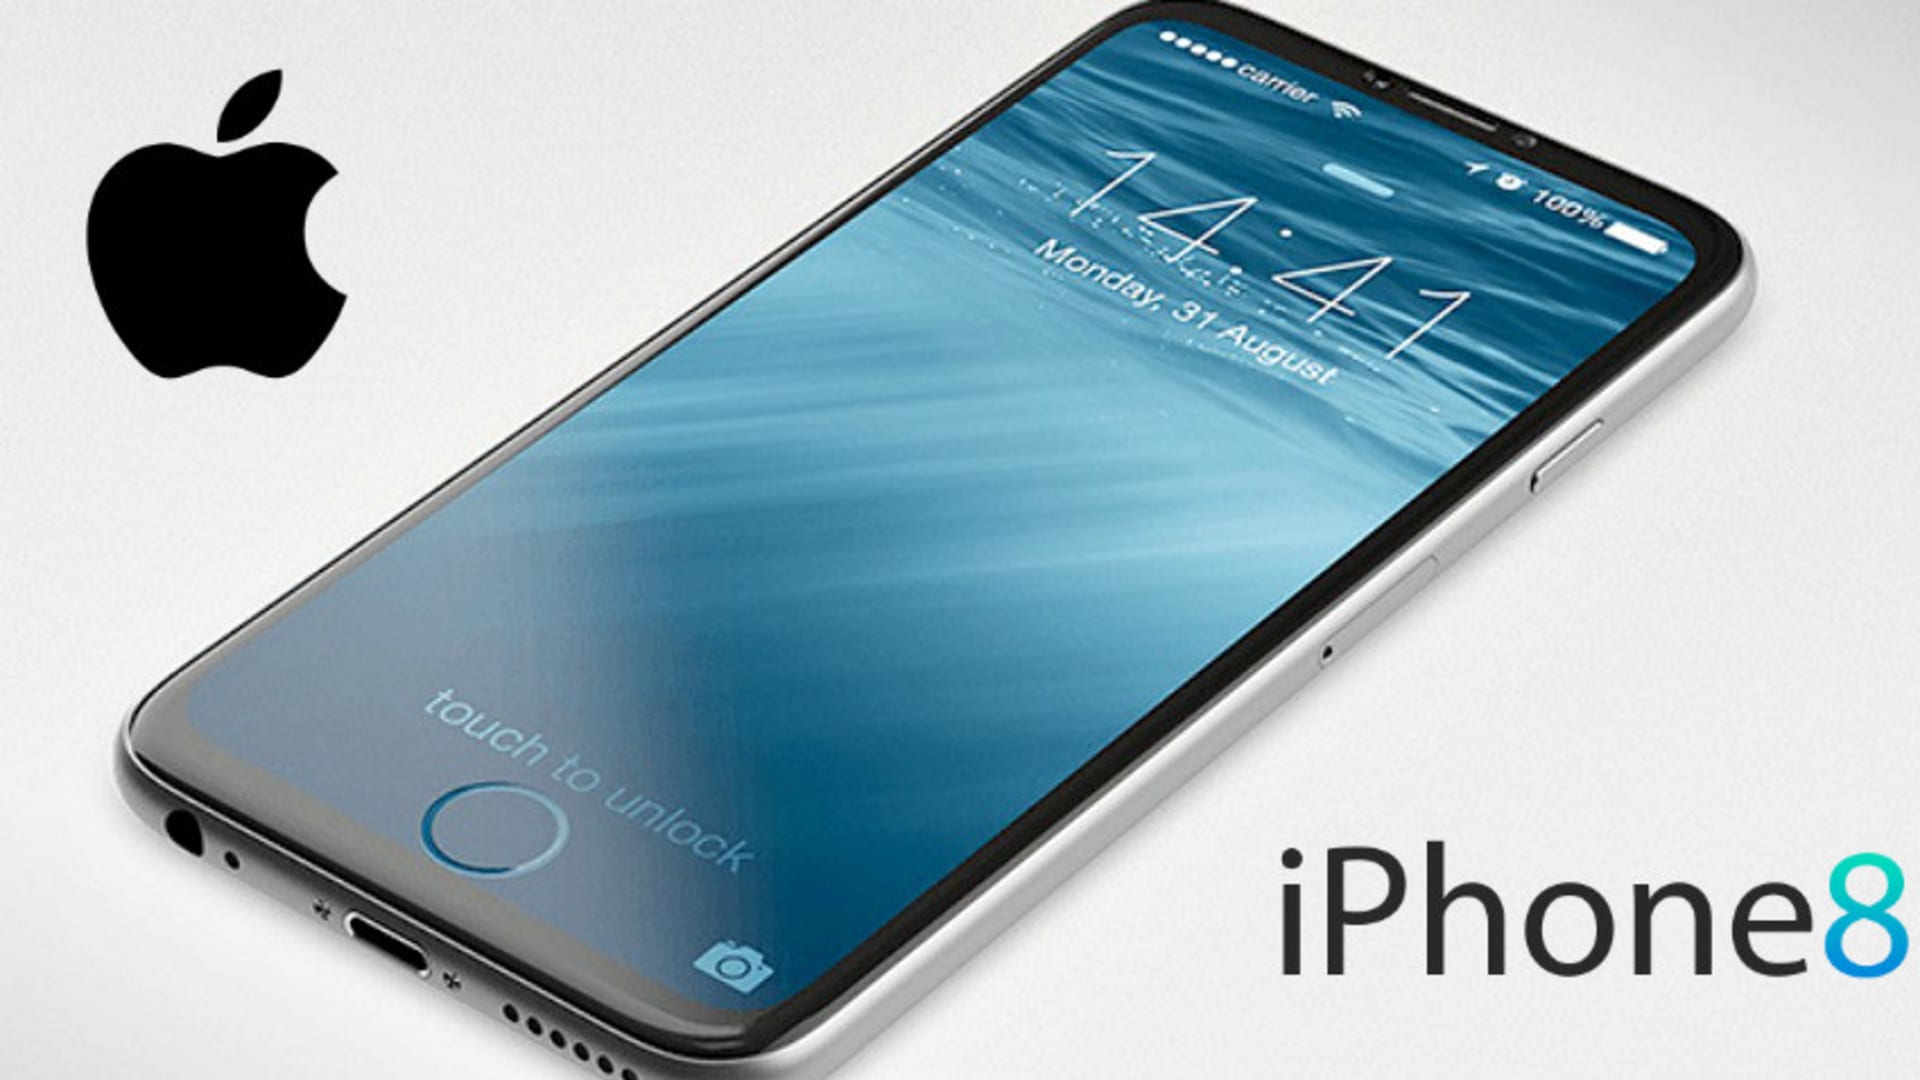 Nový iPhone bude mít bezdrátové nabíjení pomocí podložky